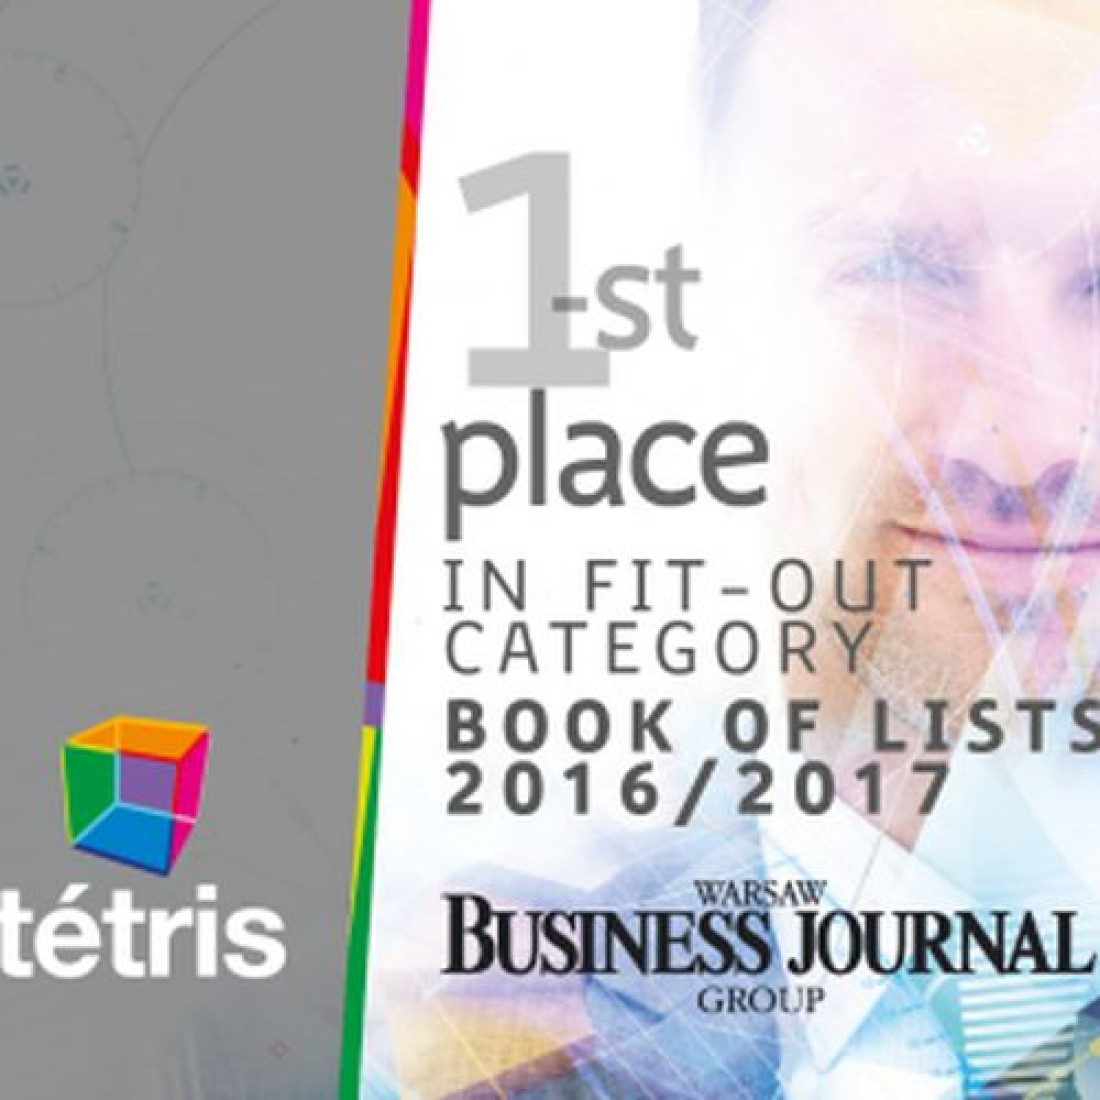 Pierwsze miejsce dla Tétris w rankingu Book of Lists